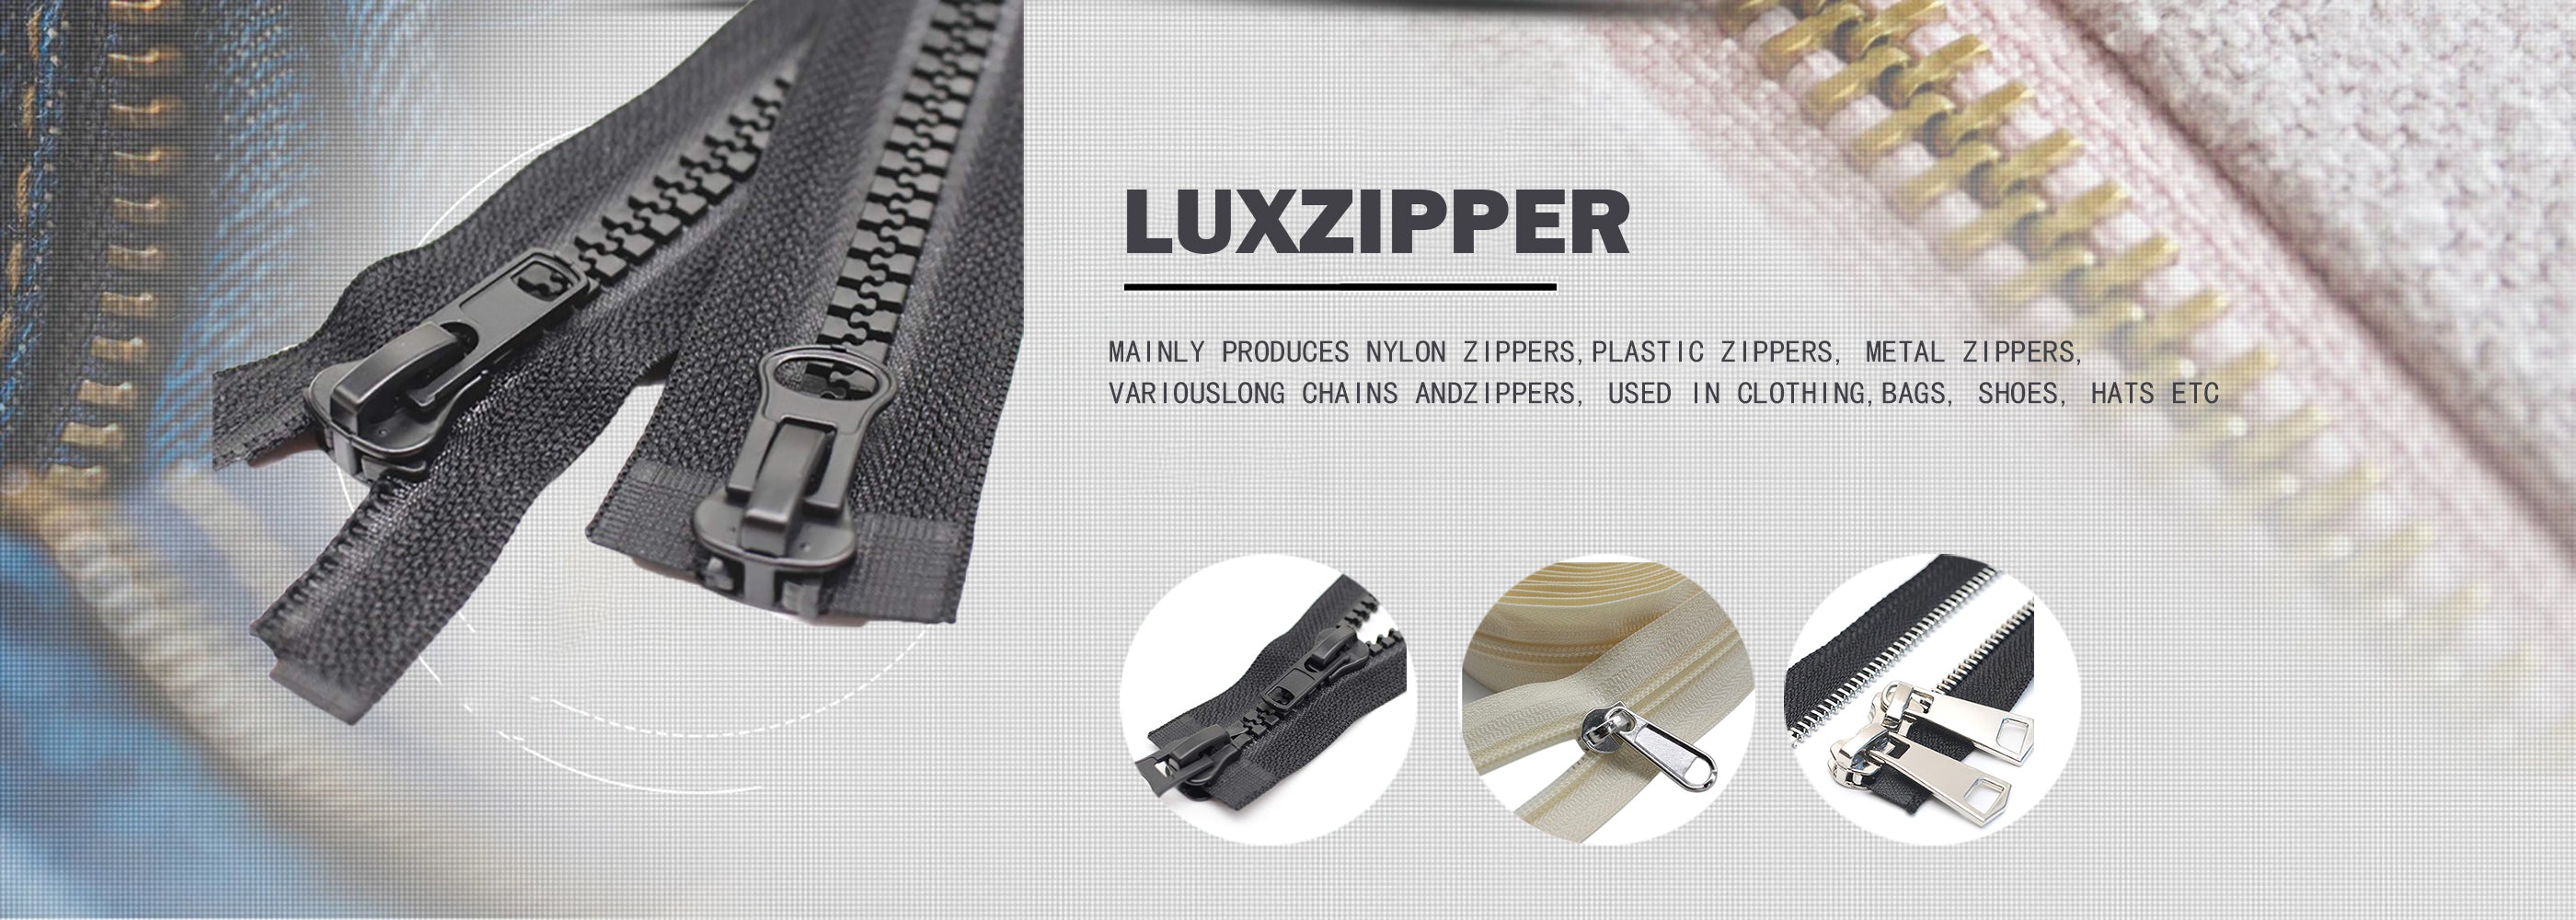 Zipper manufacturer